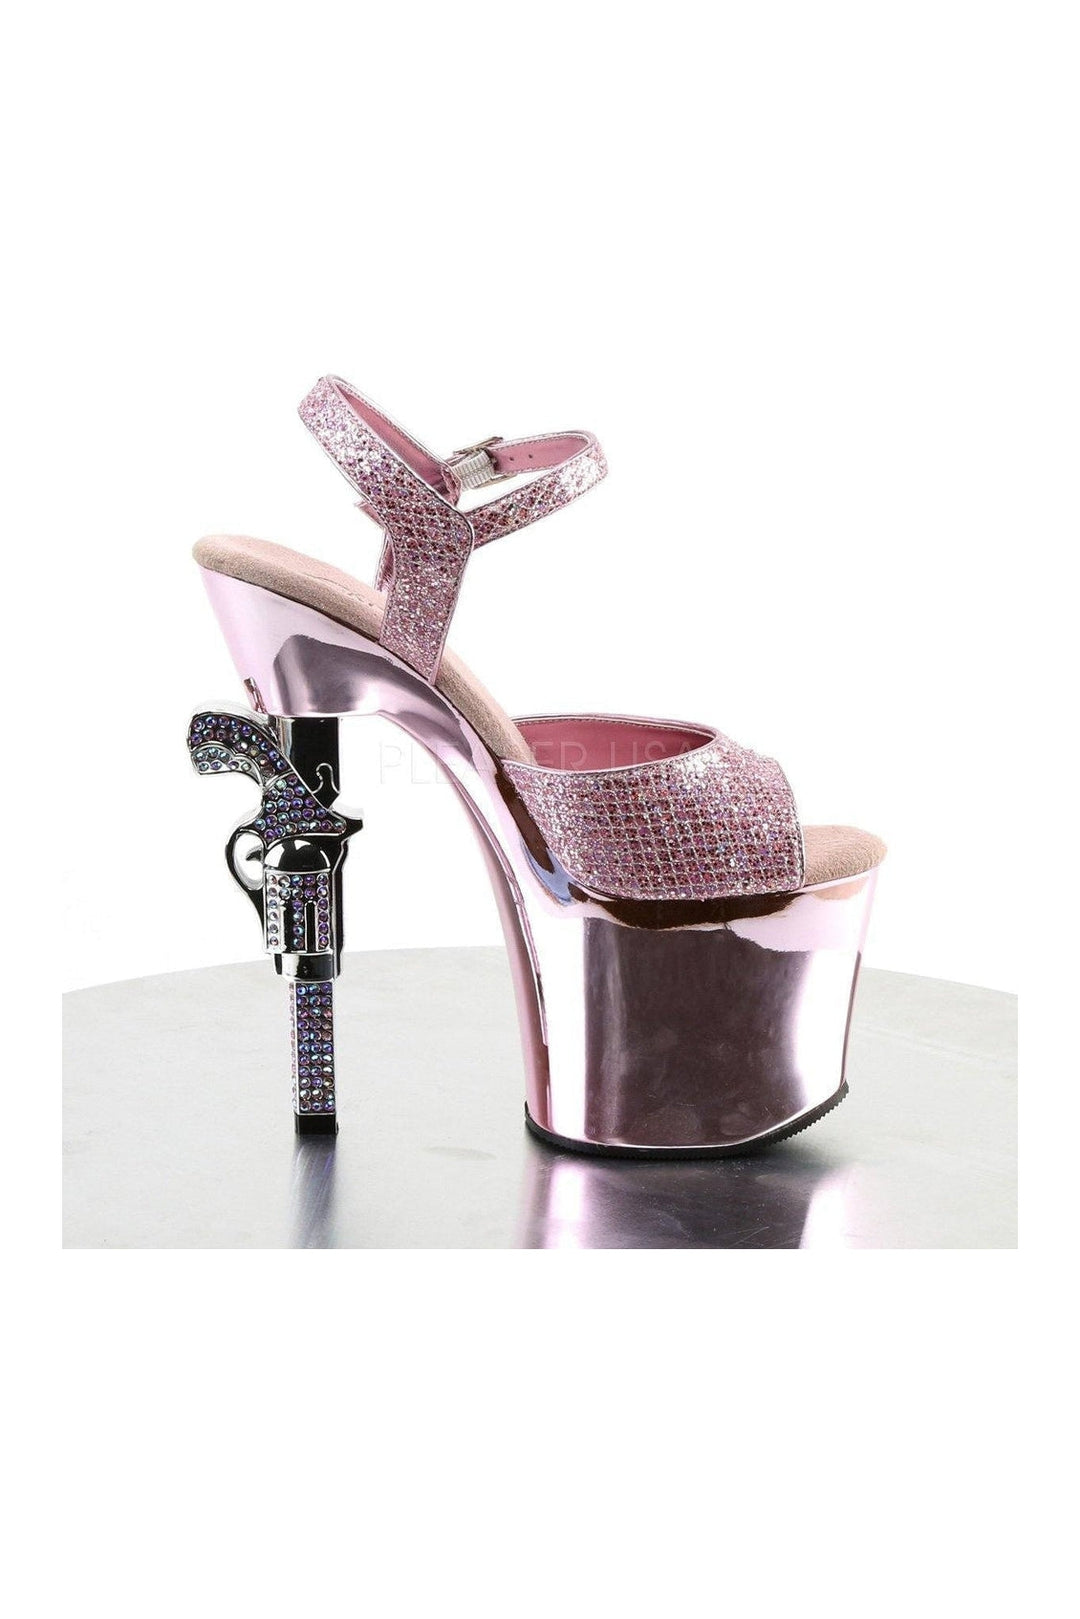 REVOLVER-709G Platform Sandal | Pink Glitter-Pleaser-Sandals-SEXYSHOES.COM